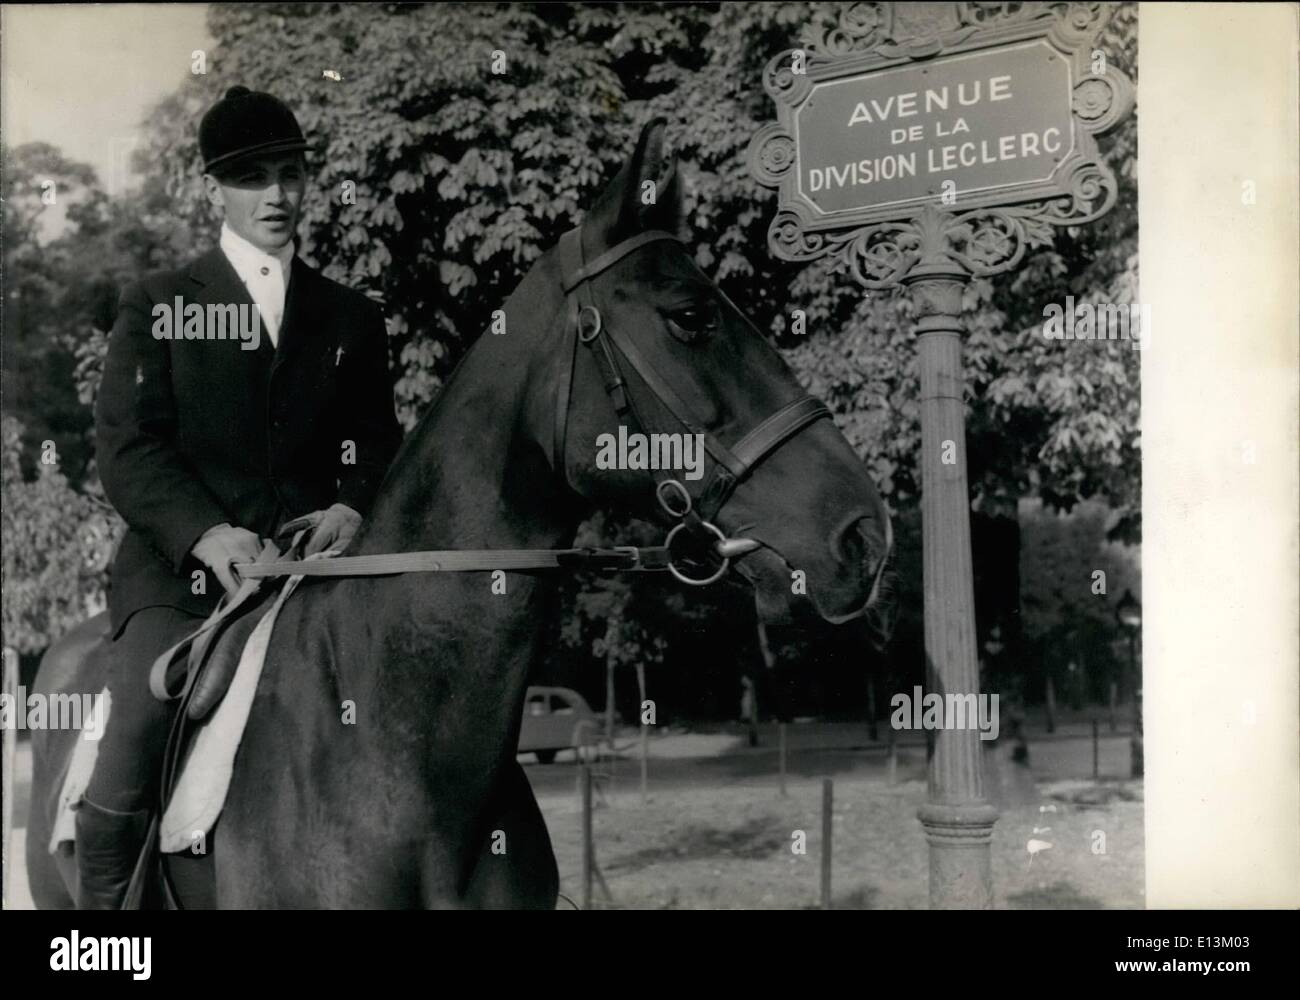 Mars 02, 2012 - Young rider autrichien espère devenir un record man : jeune cavalier Autrichien, Wilfried Wendi, qui est arrivé à Paris pour quelques jours, espère devenir le record man de la plus longue balade et de battre le record de retard (8,500 km). Il doit monter jusqu'en janvier 1960. Wilfried Wendi et son cheval Hexe, à Paris Bios De Boulogne pendant leur marche. Banque D'Images